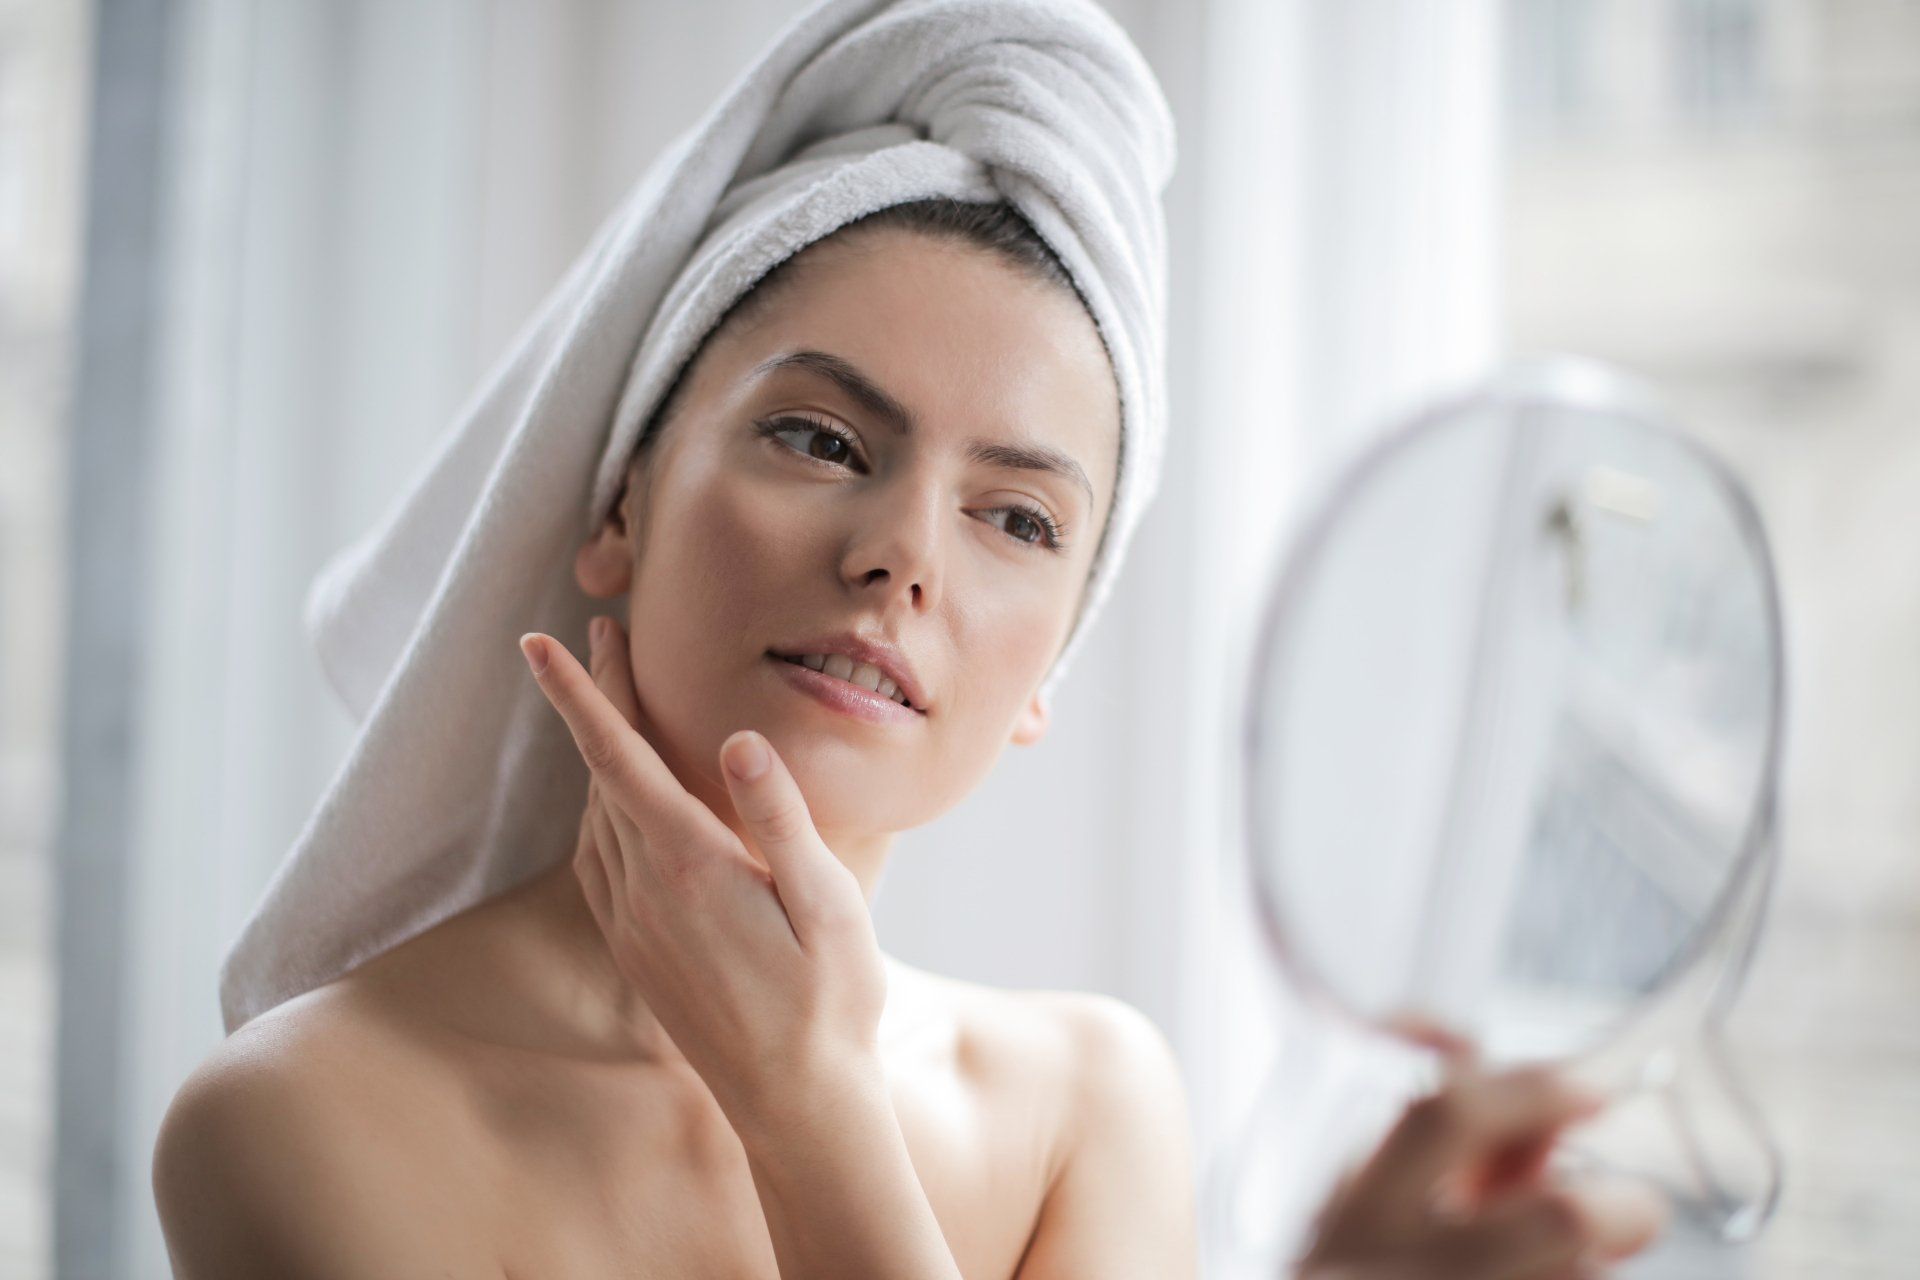 Una donna con un asciugamano avvolto intorno alla testa si guarda il viso allo specchio.